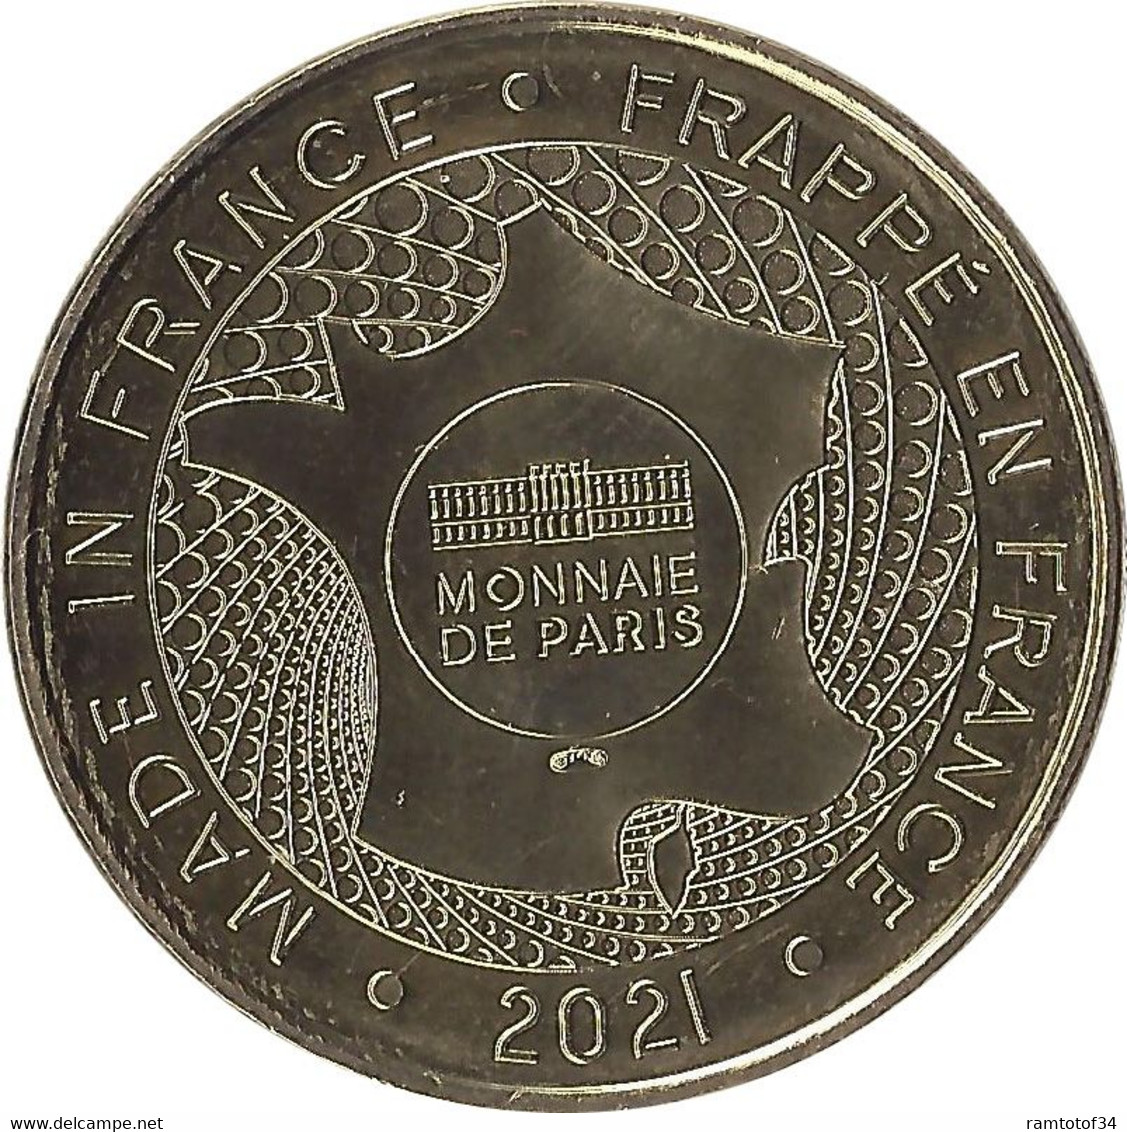 2021 MDP188 - DIEPPE - Musée De Dieppe (Année Saint-Saëns 1921-2021) / MONNAIE DE PARIS 2021 - 2021